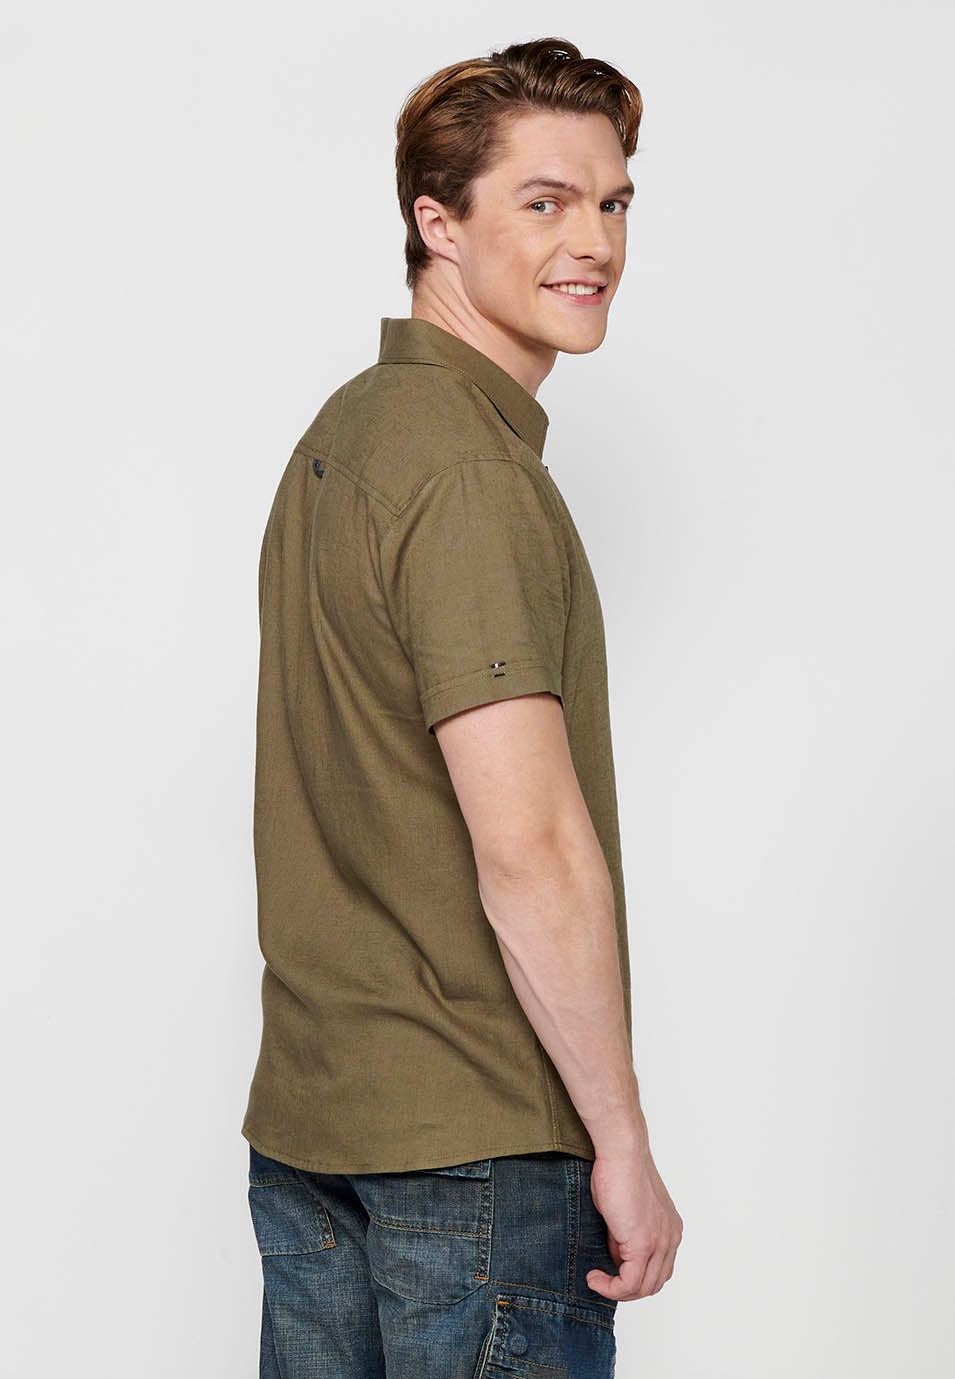 Short Sleeve Linen Shirt, khaki color, for men 3